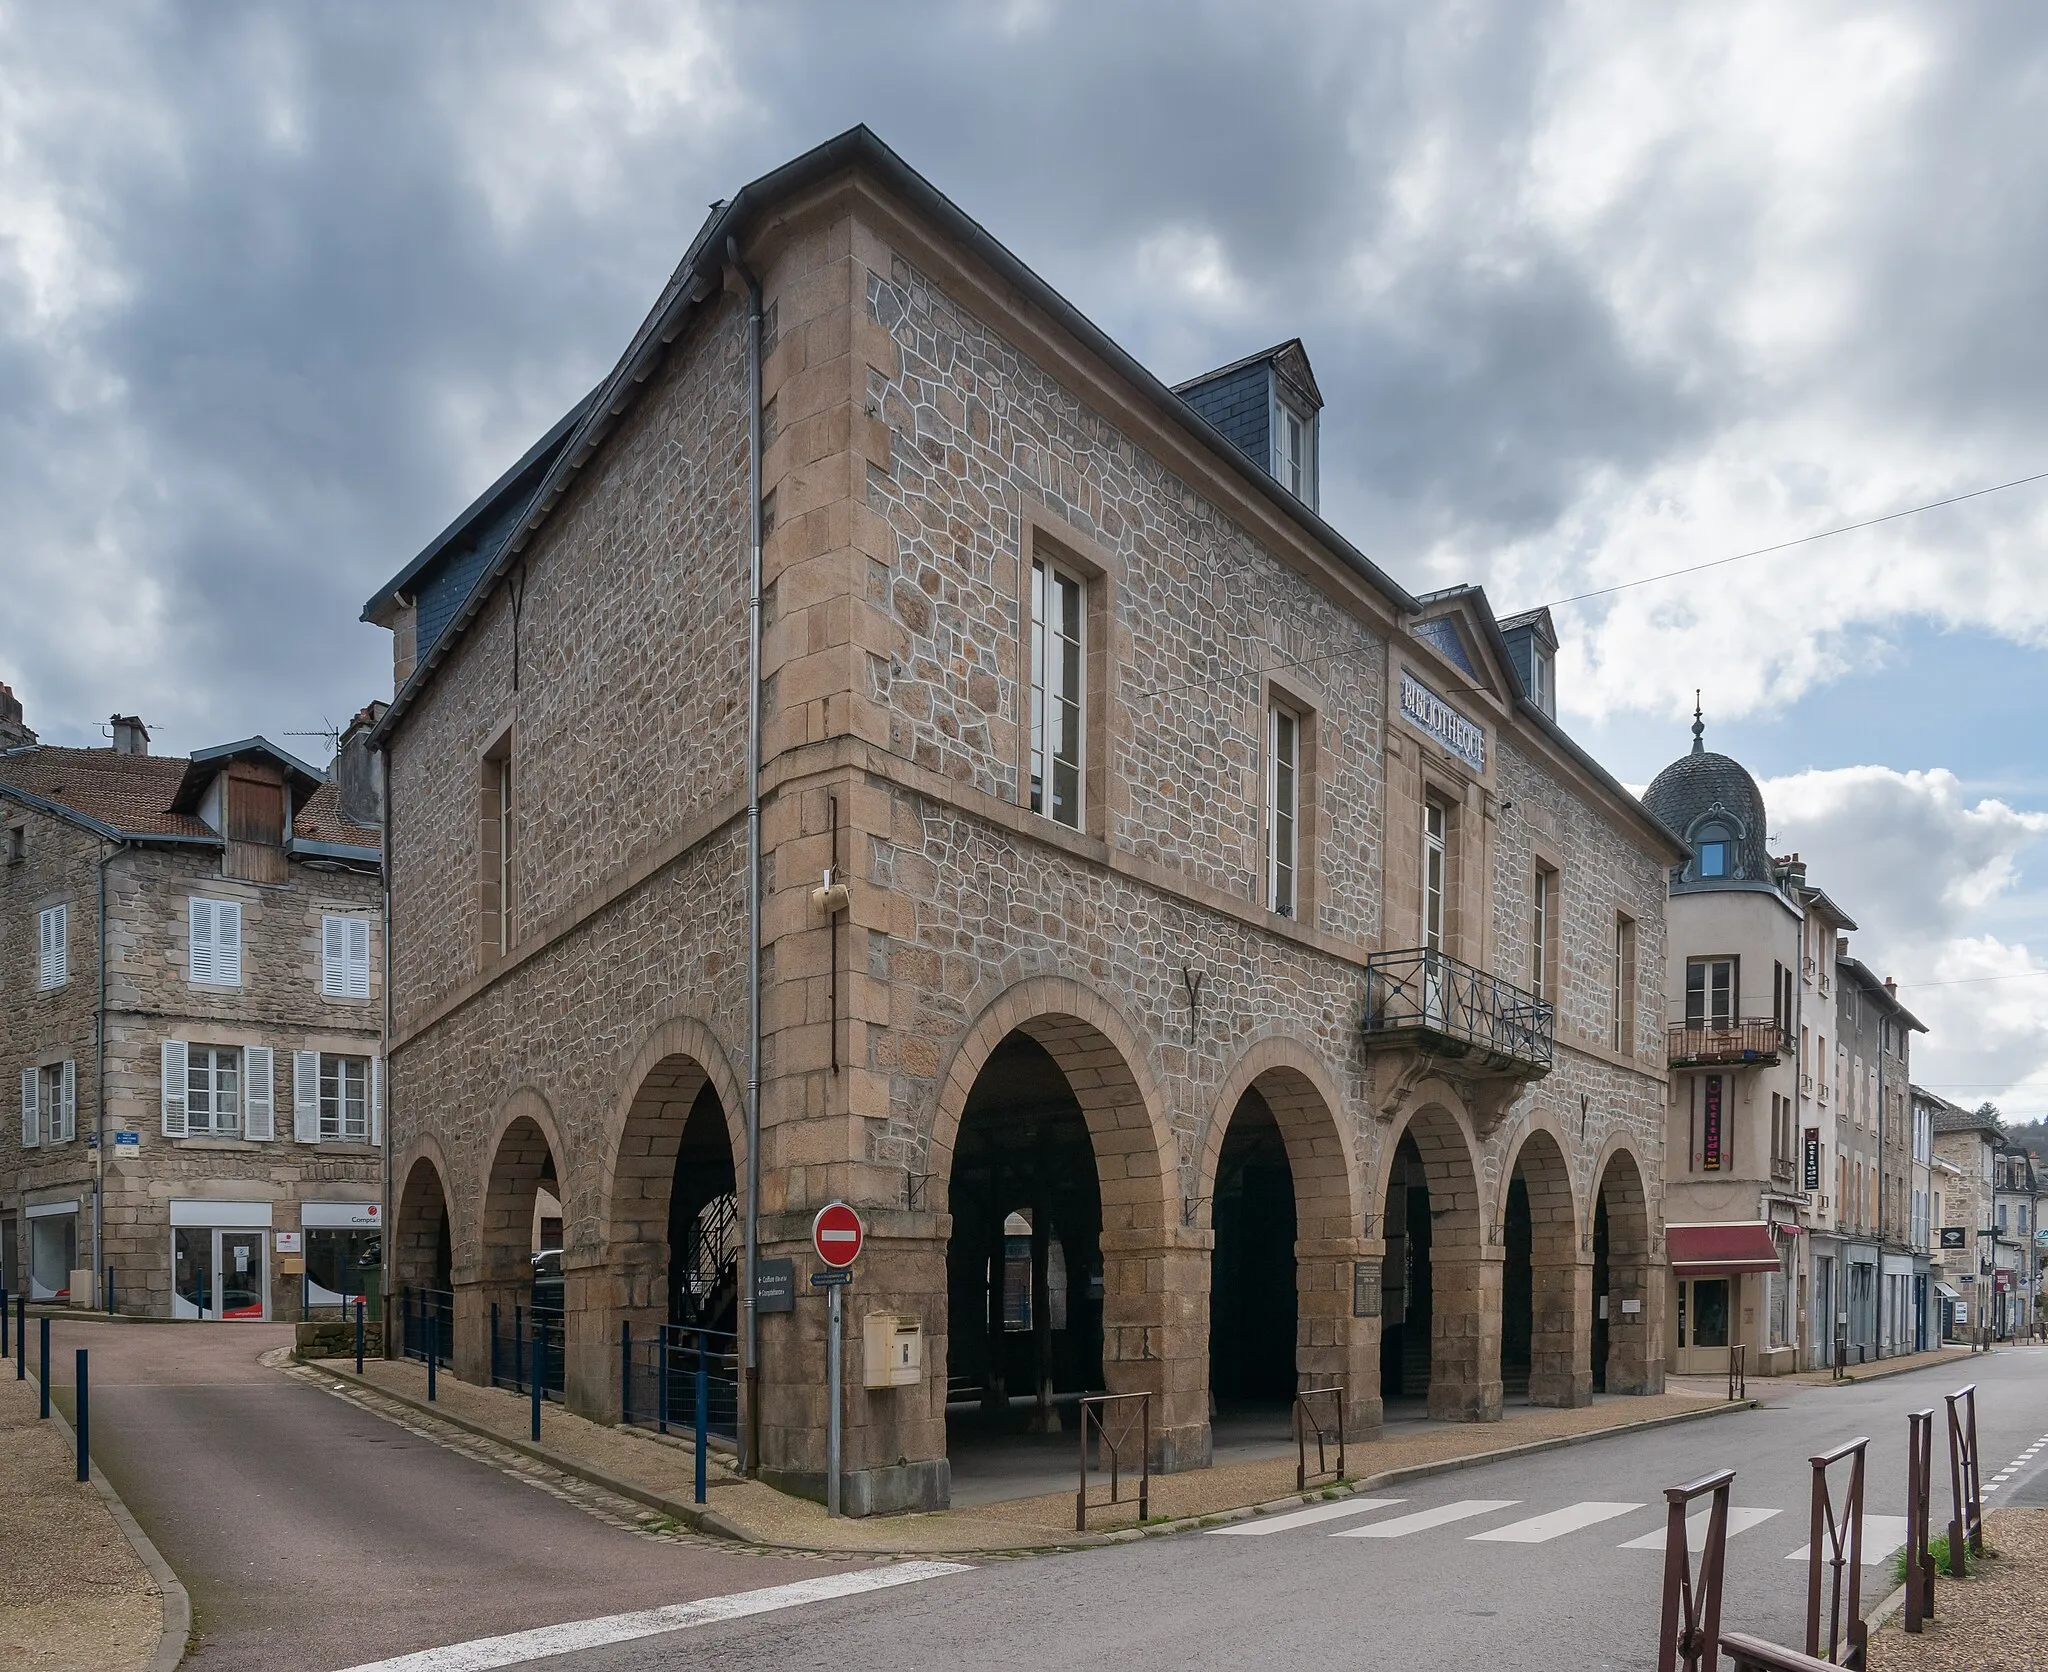 Bild von Limousin